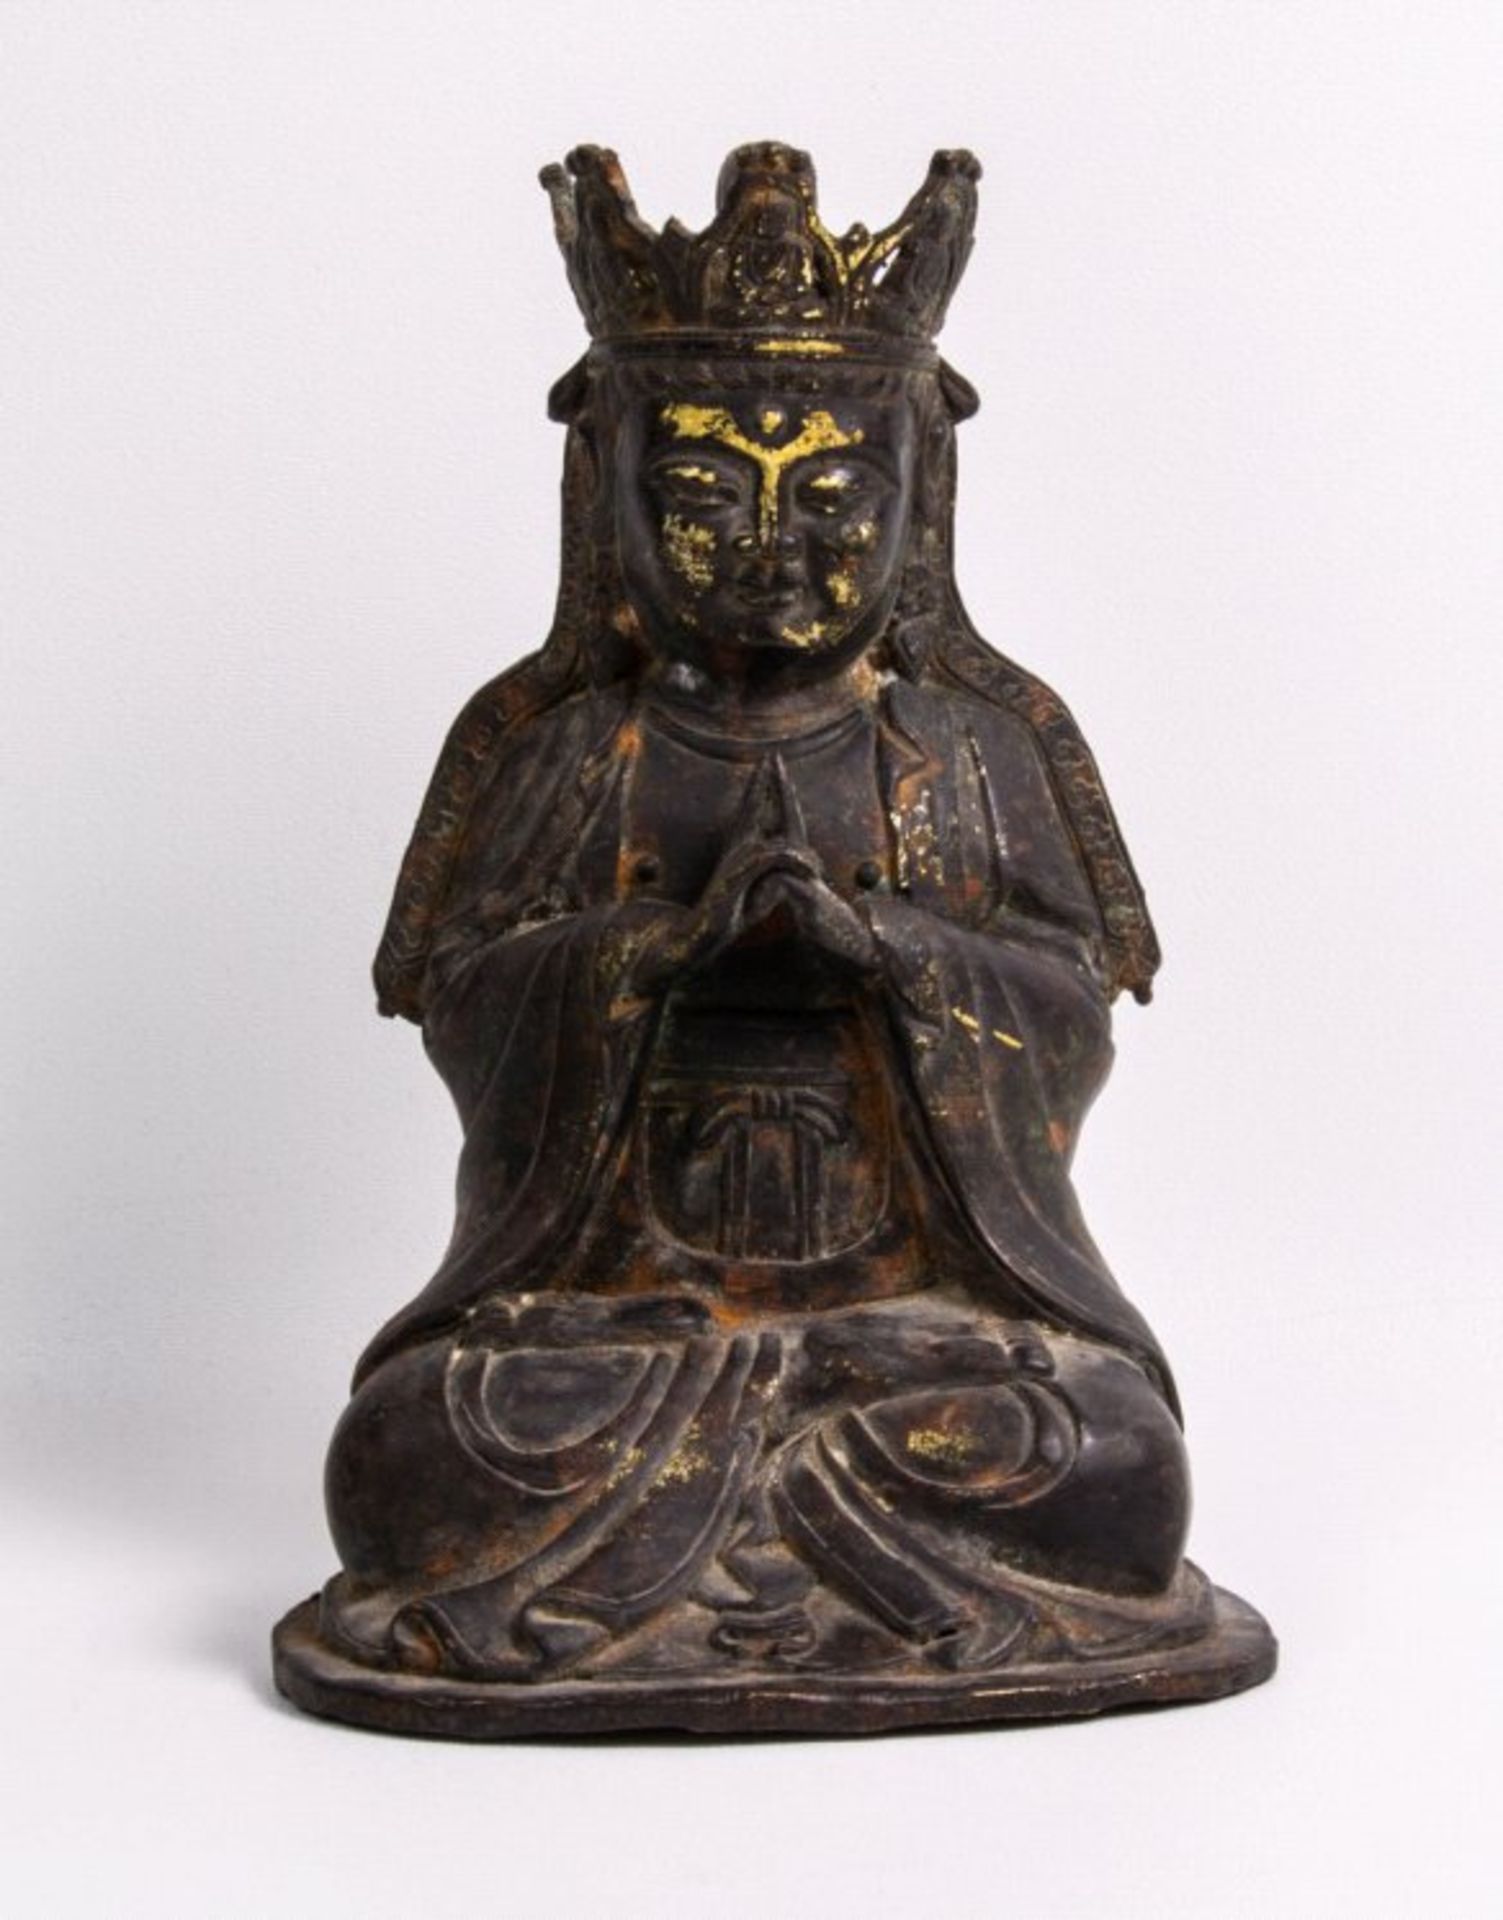 Guan Ying, Ming-Dynastie, China um 1520/30Bronze, in Meditationssitz, faltenreiches Gewand, Diadem